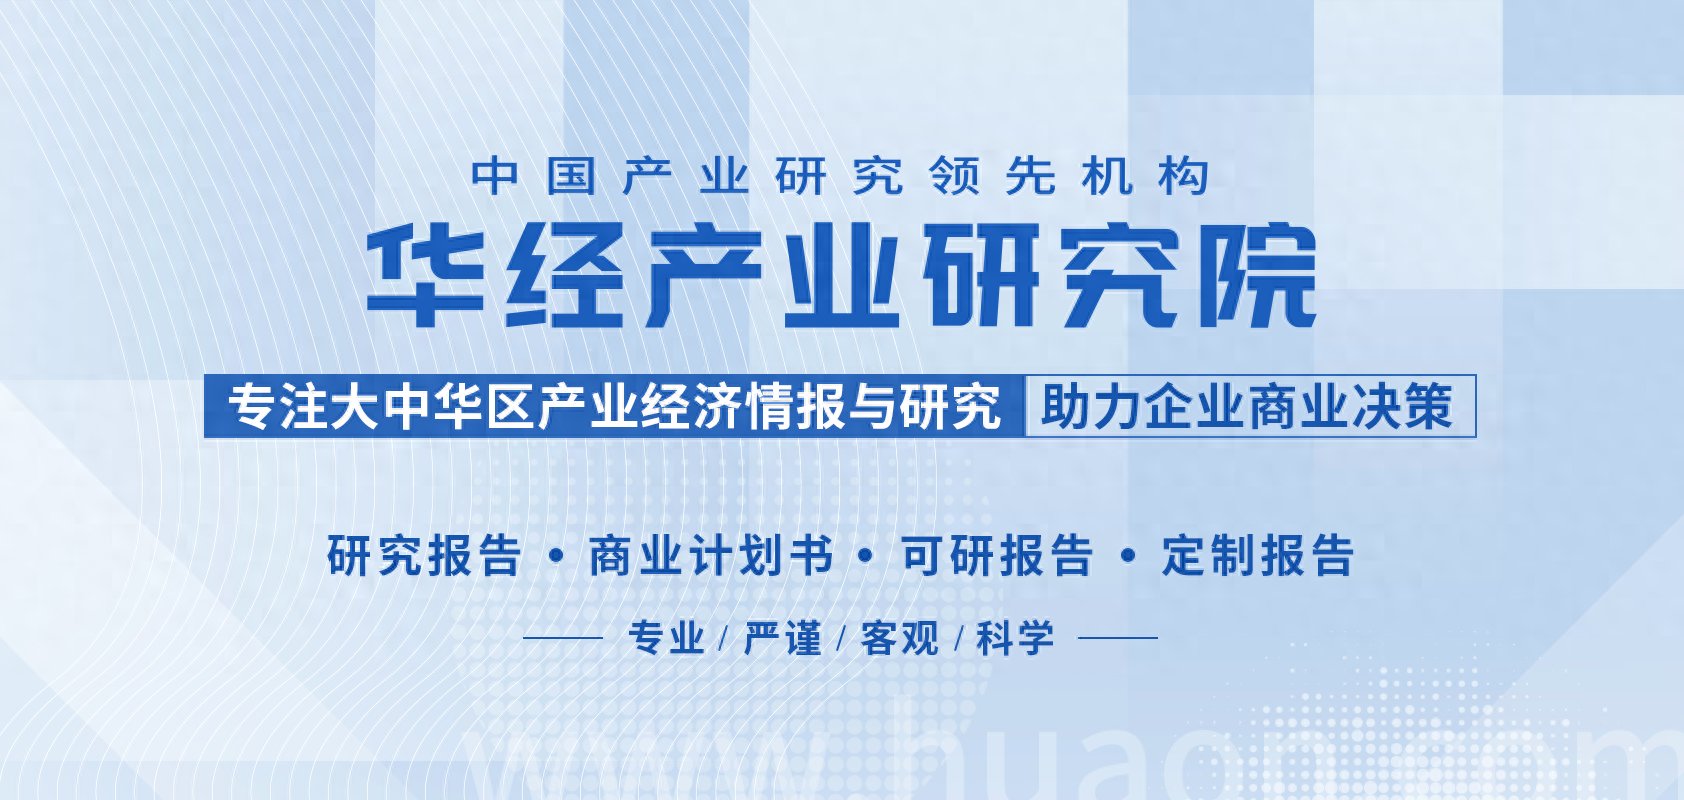 2022年中国PVC行业产量、产能、装置开工率及进出口分析「图」